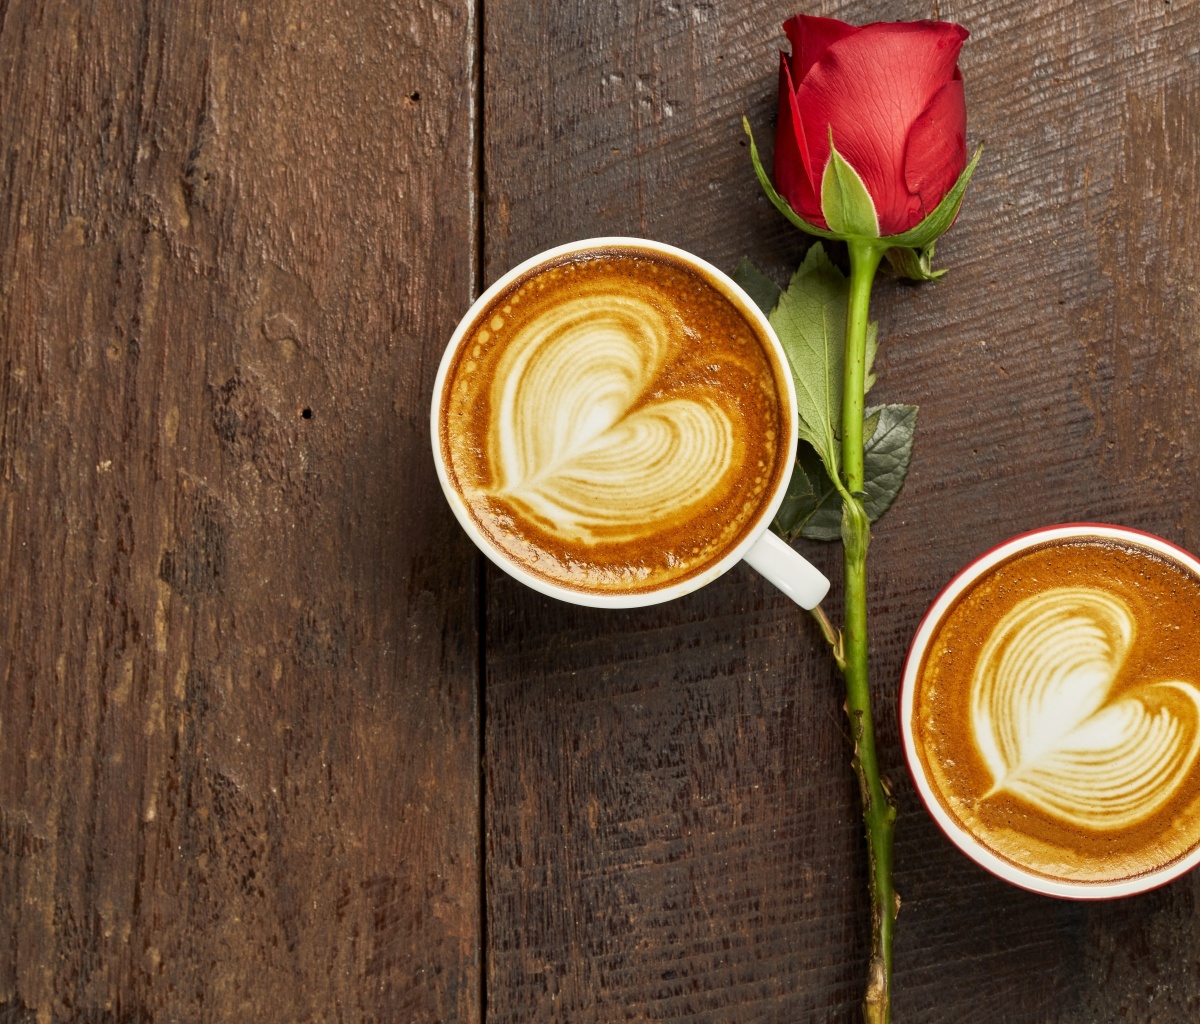 Обои Romantic Coffee and Rose 1200x1024